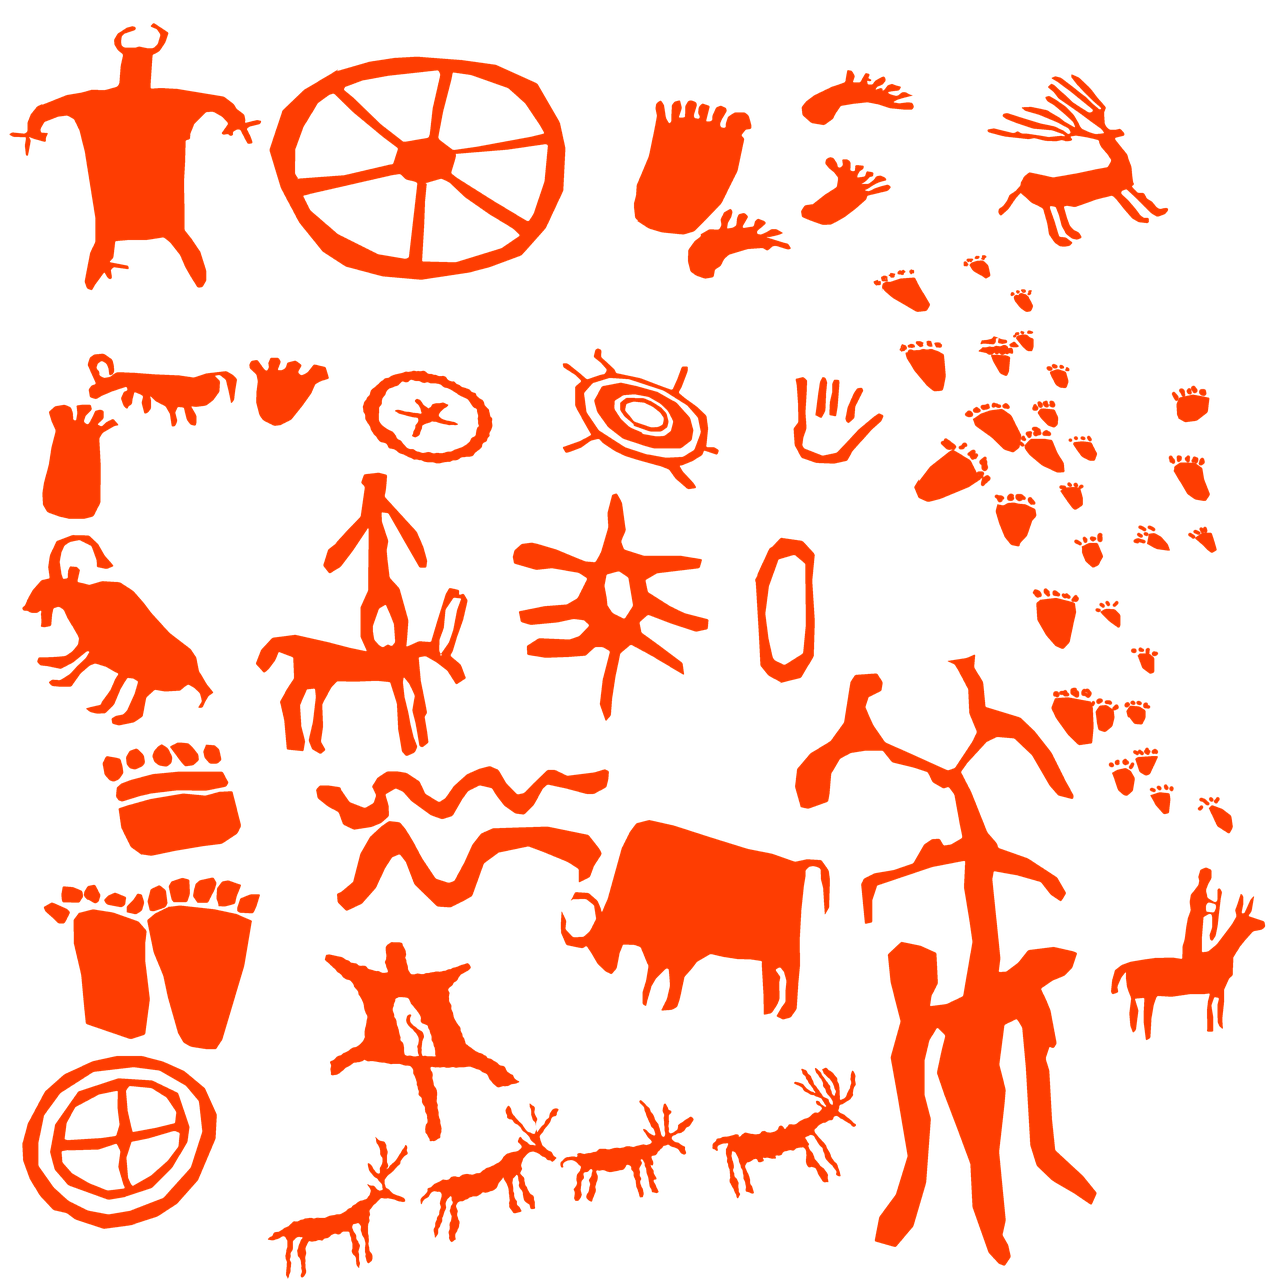 Пиктограммы древних людей